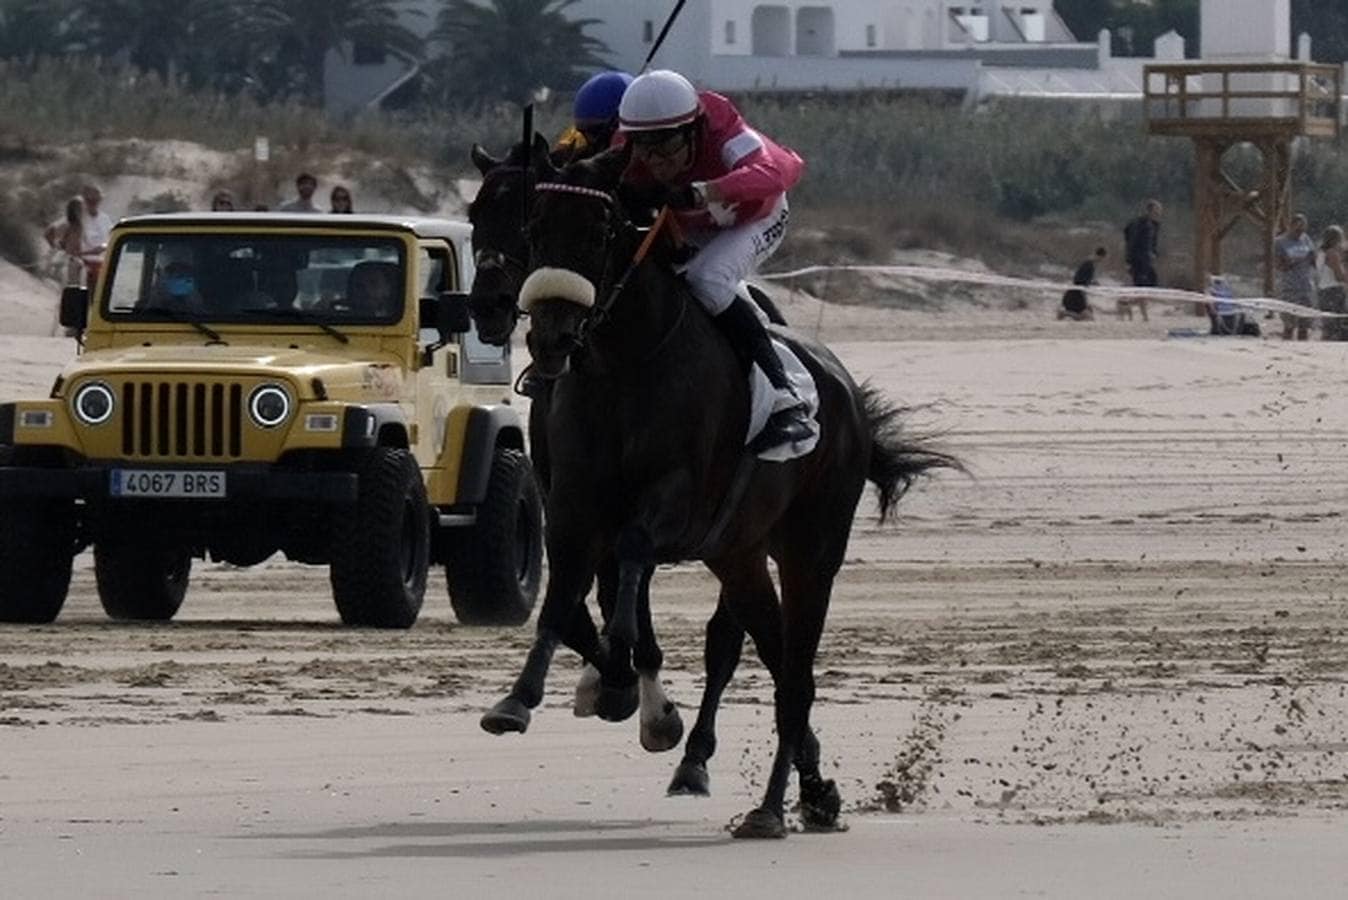 FOTOS: Carreras de caballos en la playa de Zahara de los Atunes